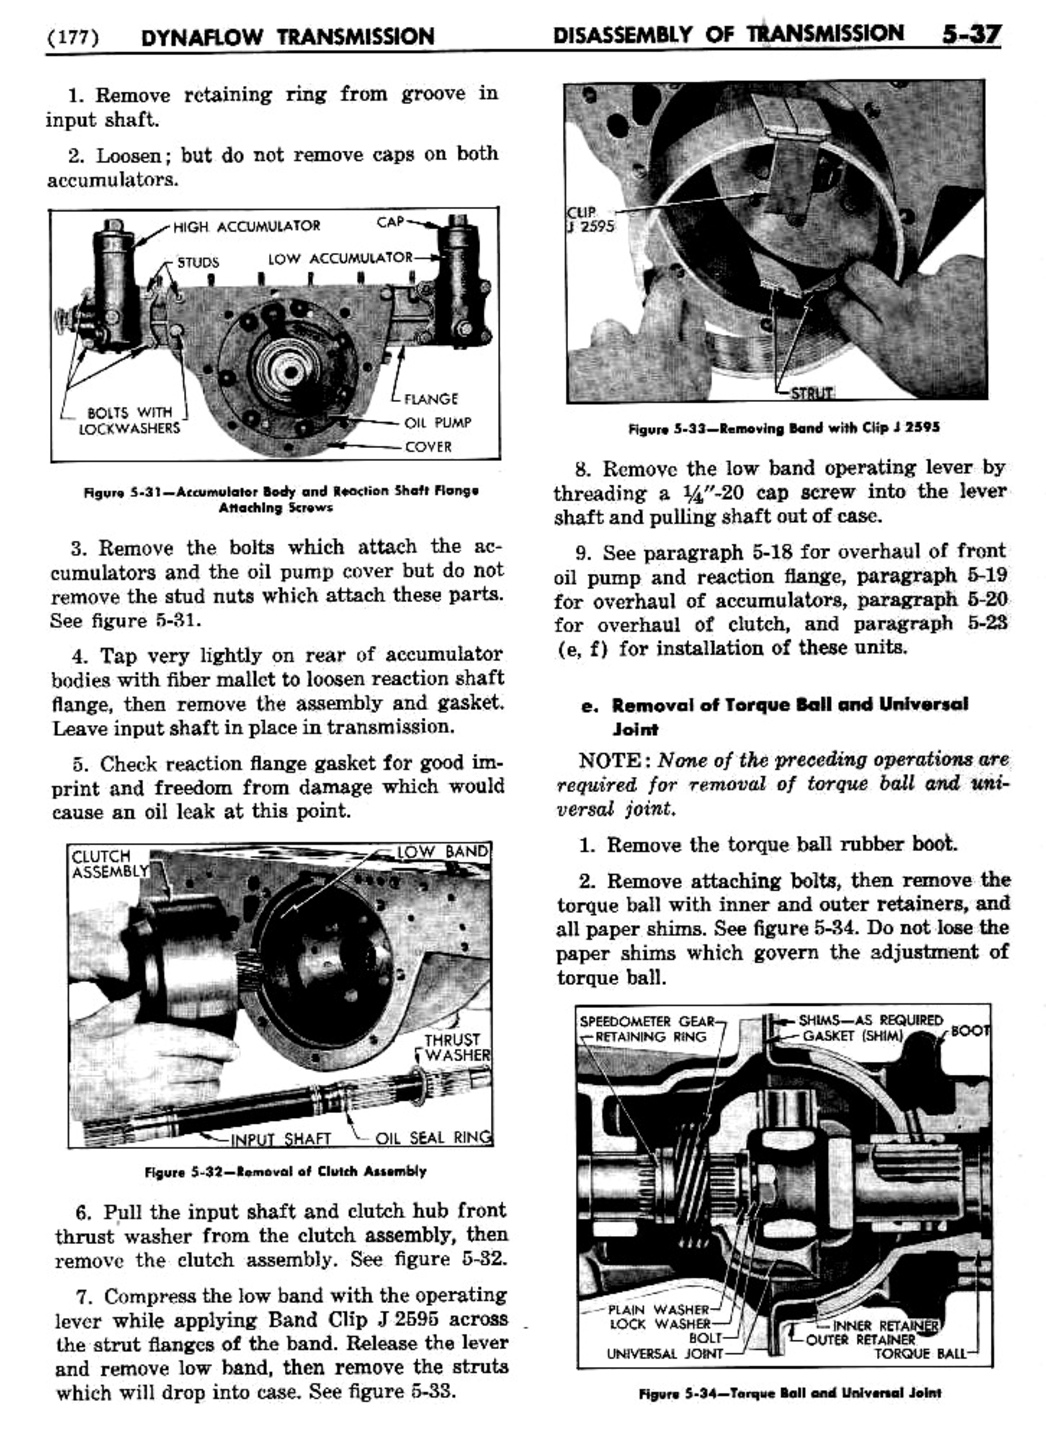 n_06 1955 Buick Shop Manual - Dynaflow-037-037.jpg